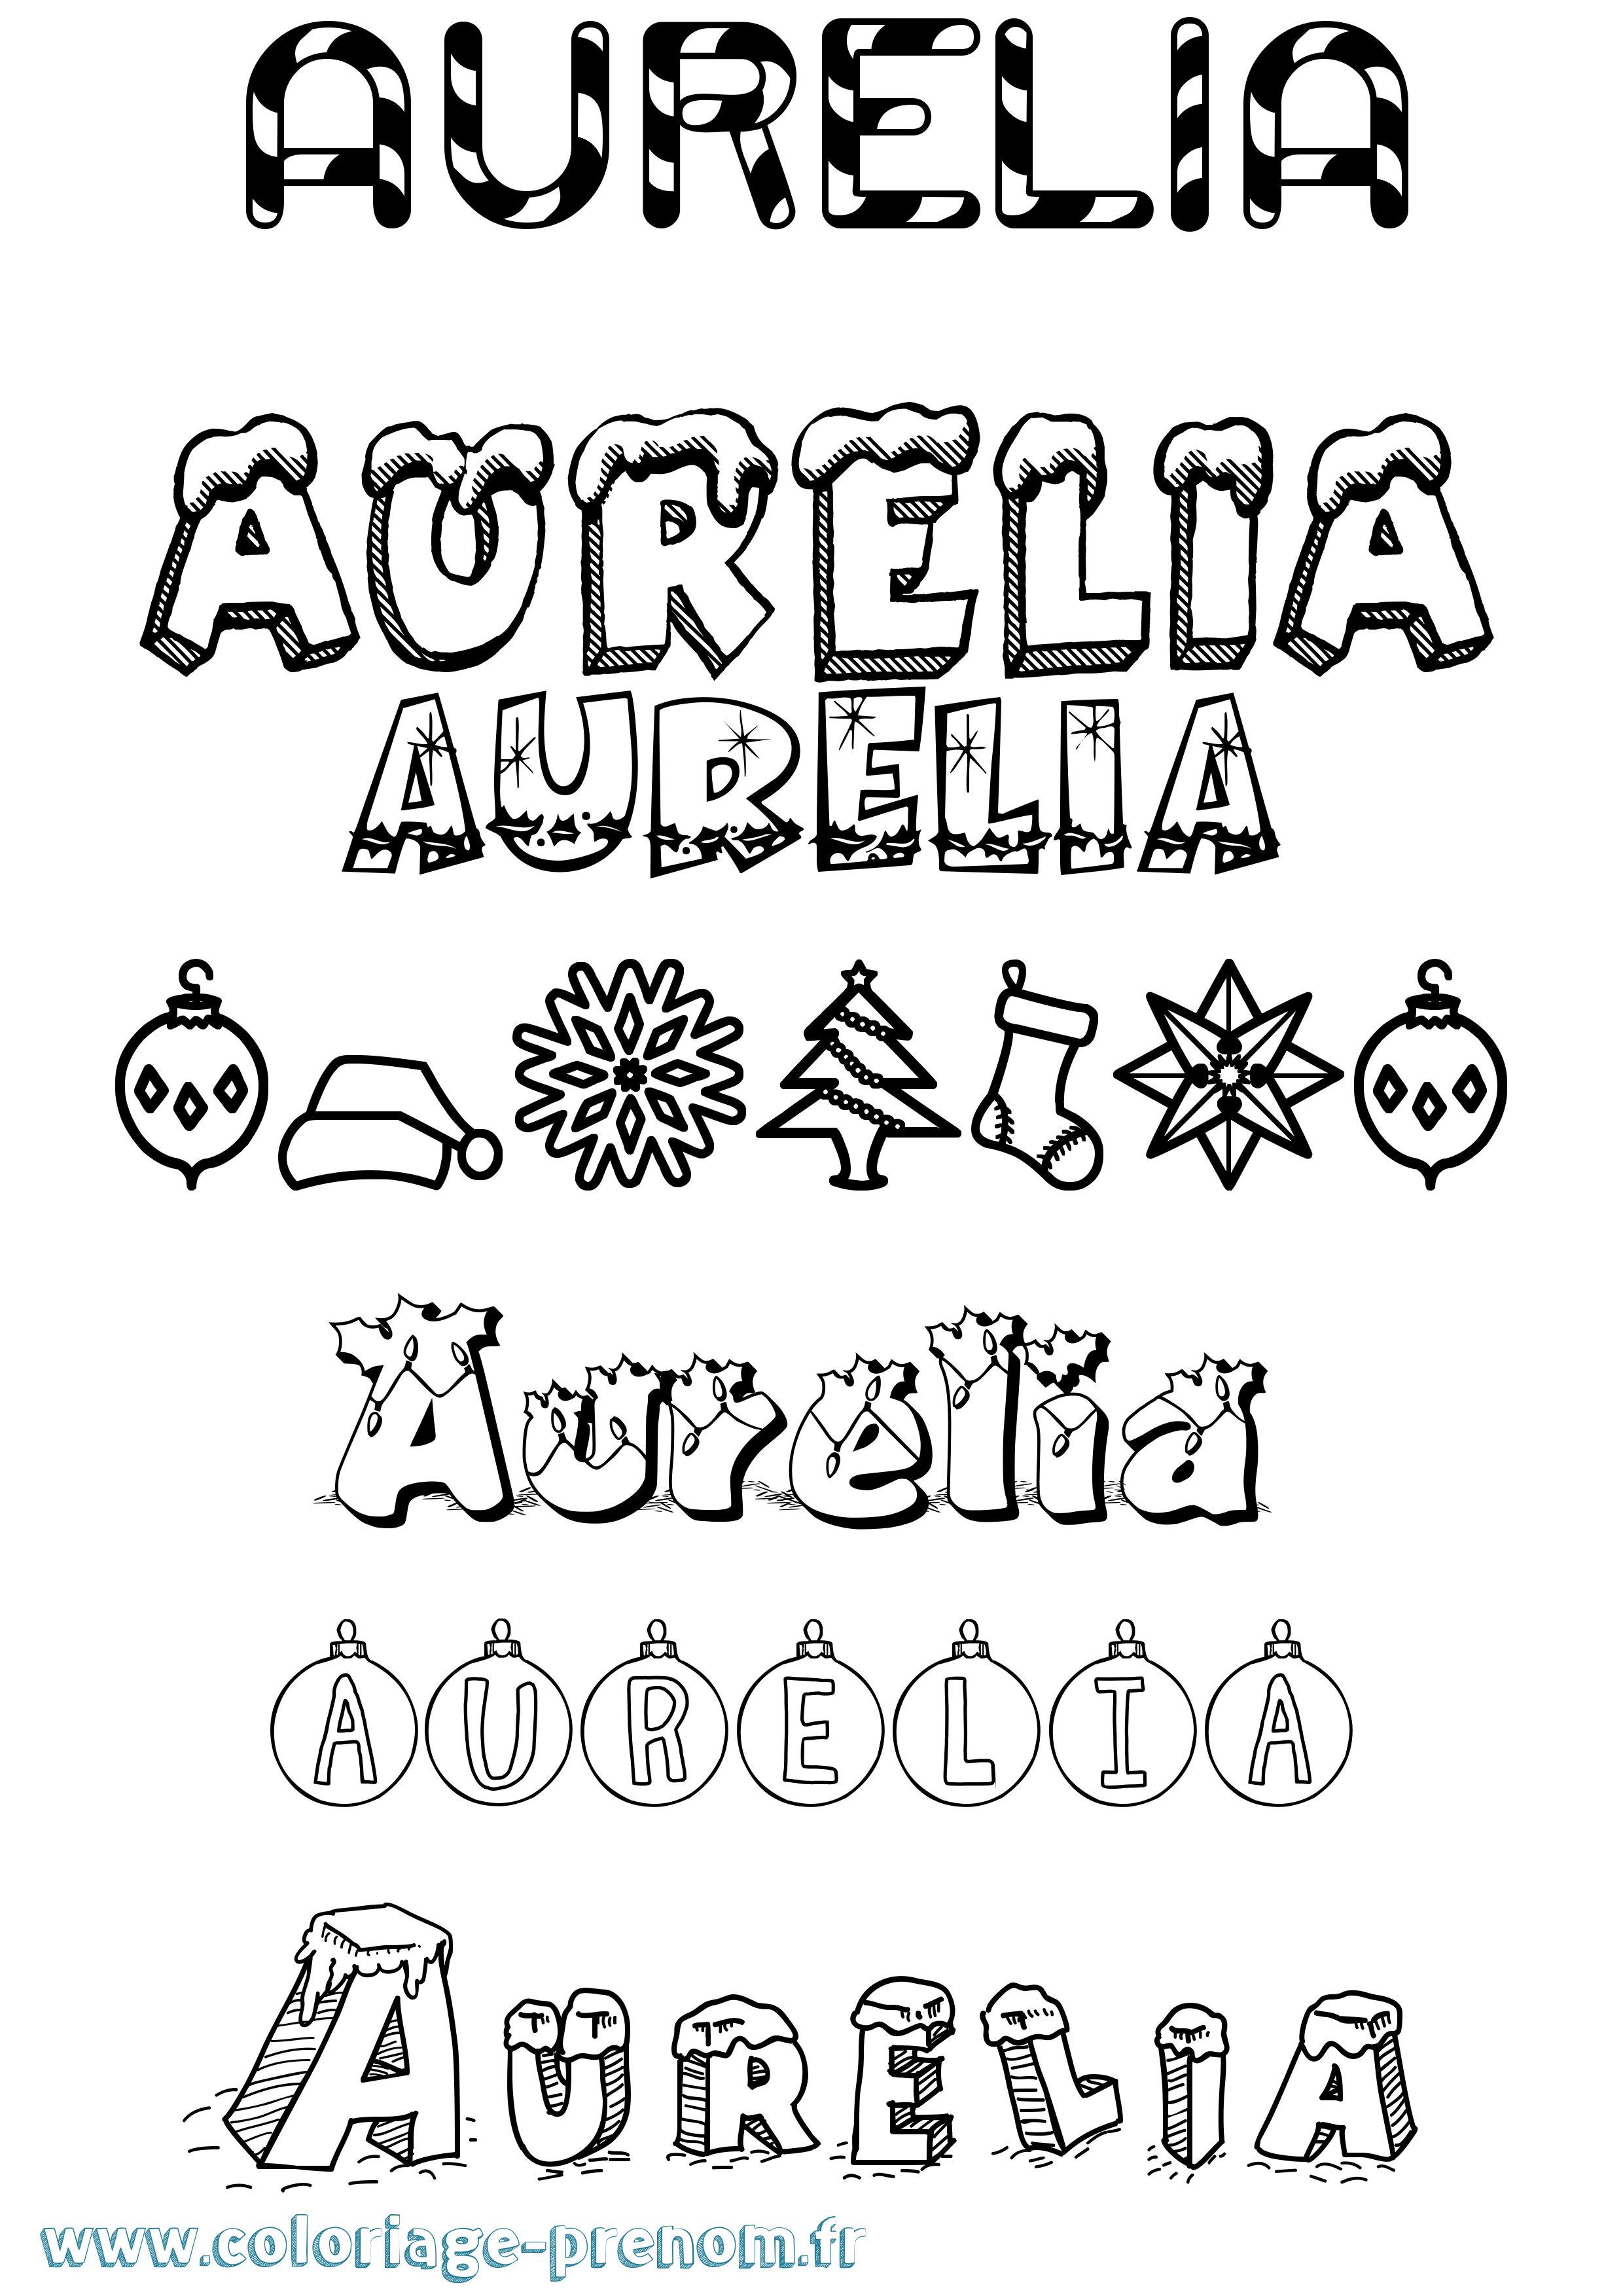 Coloriage prénom Aurelia